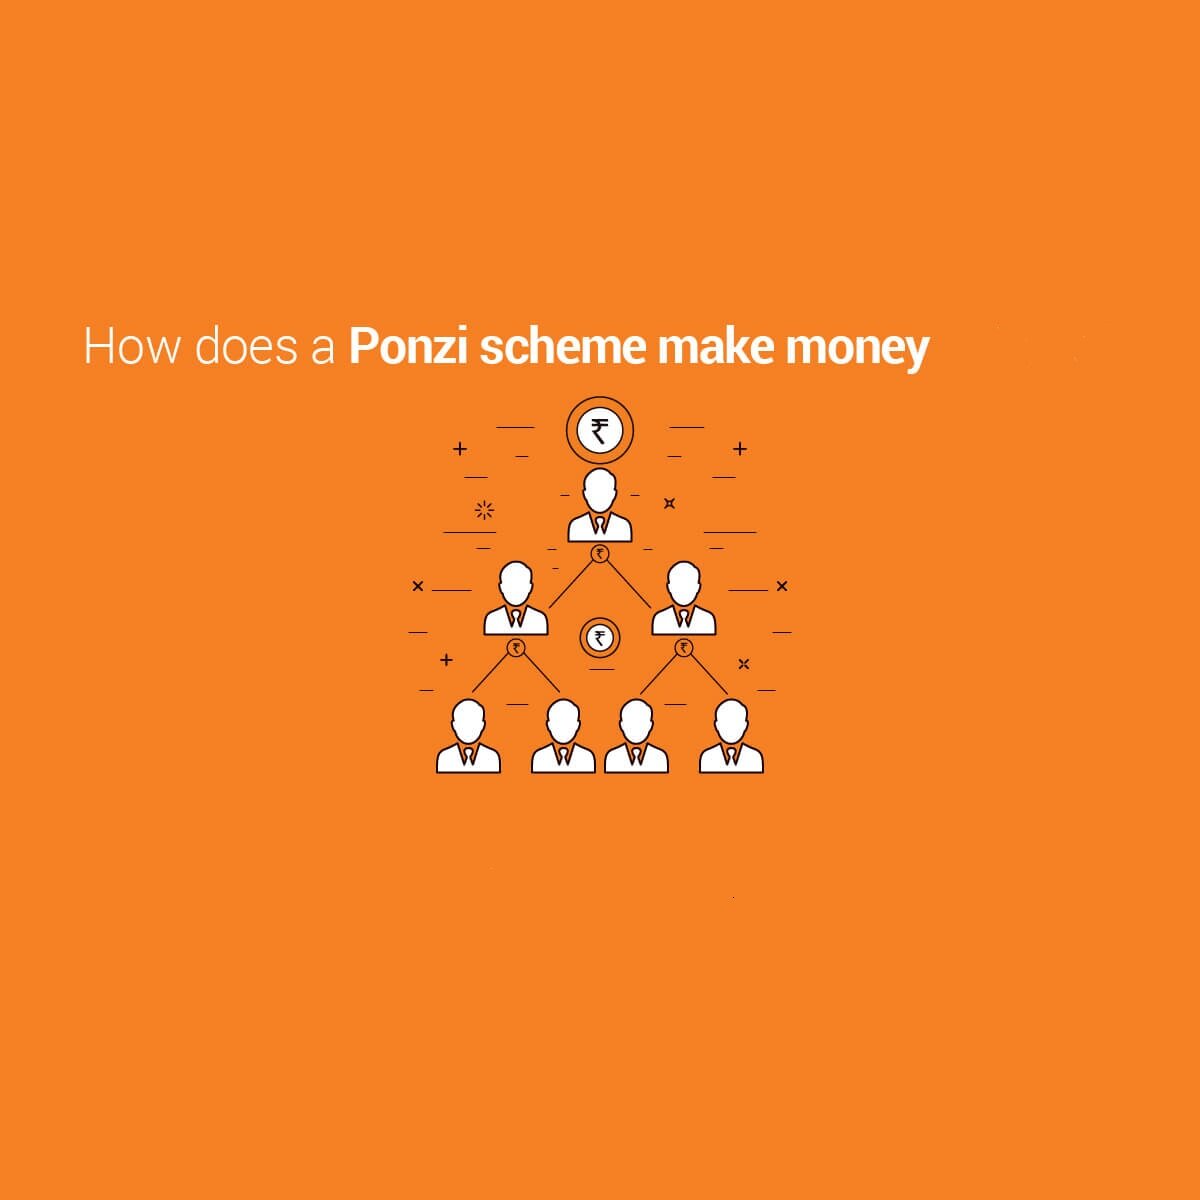 طرح پانزی چیست؟ Ponzi Scheme و طرح‌های هرمی دنیای ارزدیجیتال